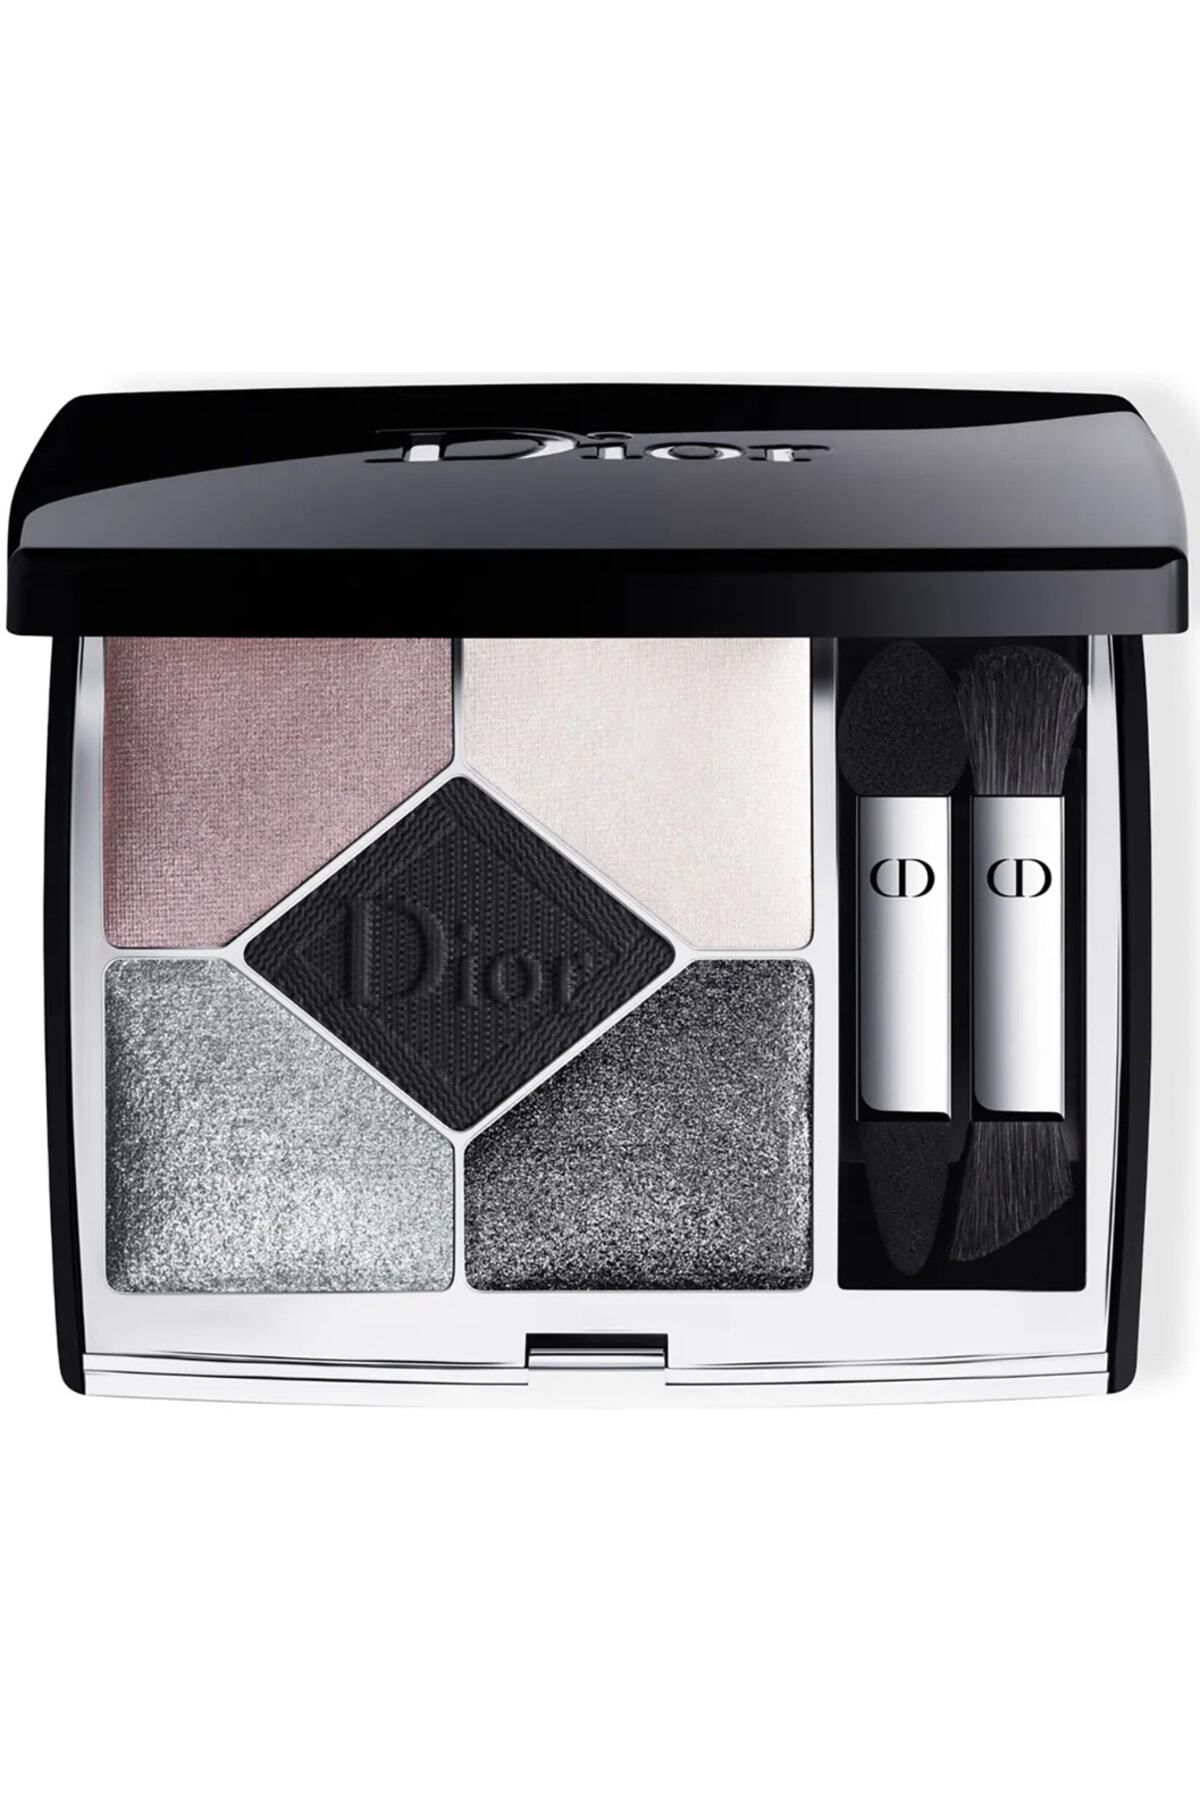 Dior Göz Farı Renkleri Canlı ve Eşsiz 5 Couleurs Couture Eyeshadow Palette 079 Black Bow